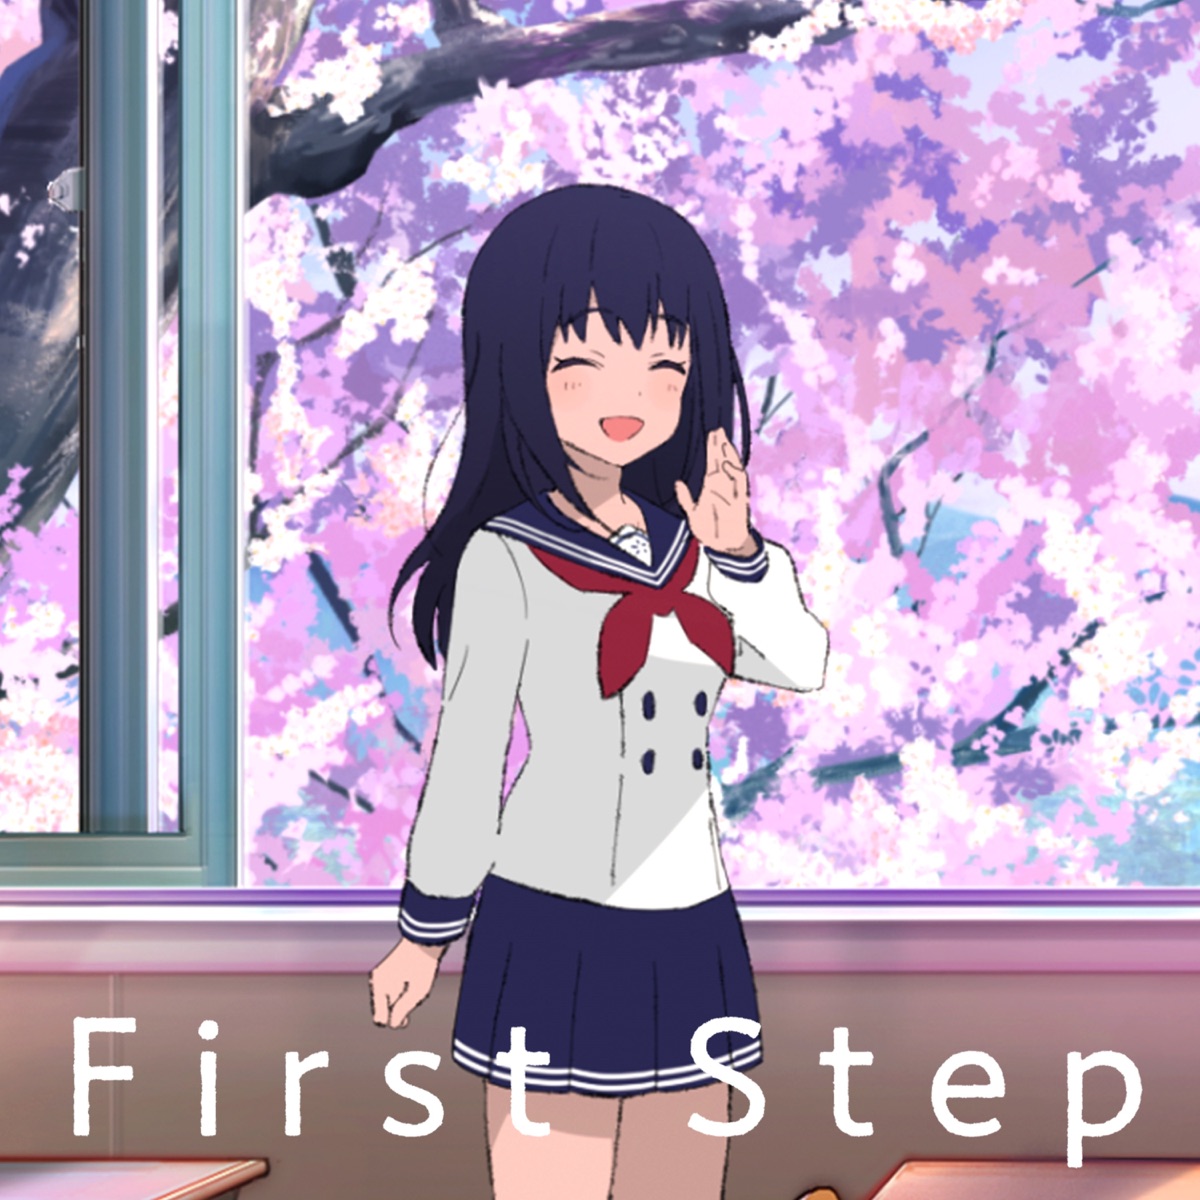 『長瀬麻奈(神田沙也加) - First Step』収録の『First Step』ジャケット